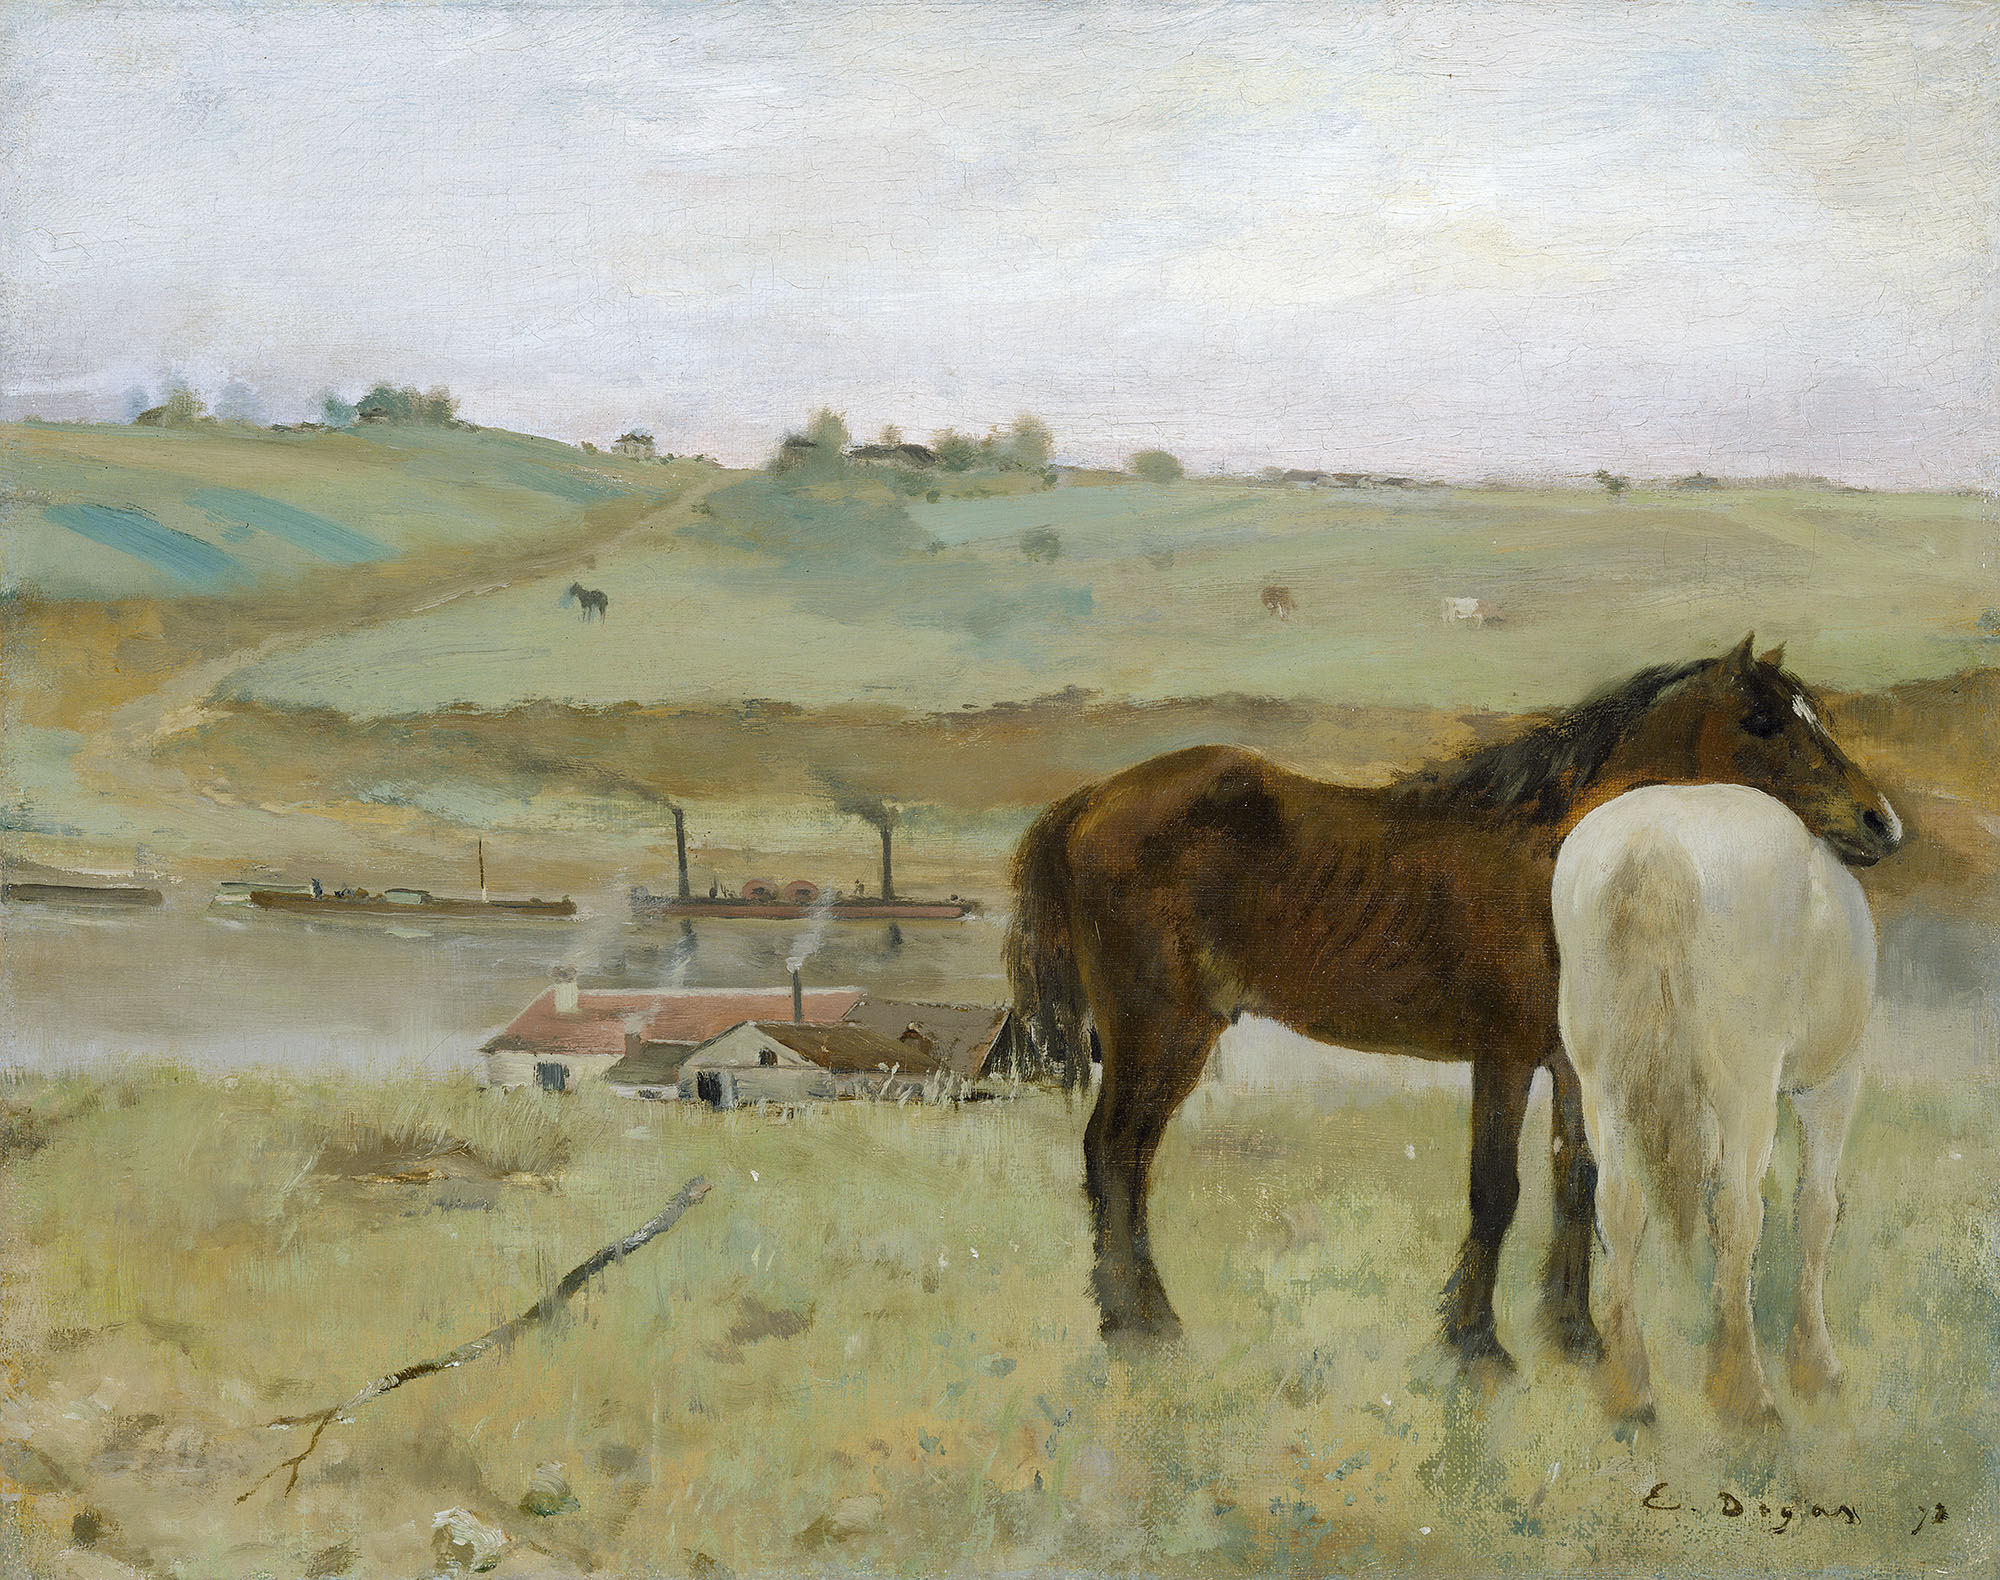 Эдгар Дега. "Лошади на лугу". 1871. Национальная галерея искусств, Вашингтон.